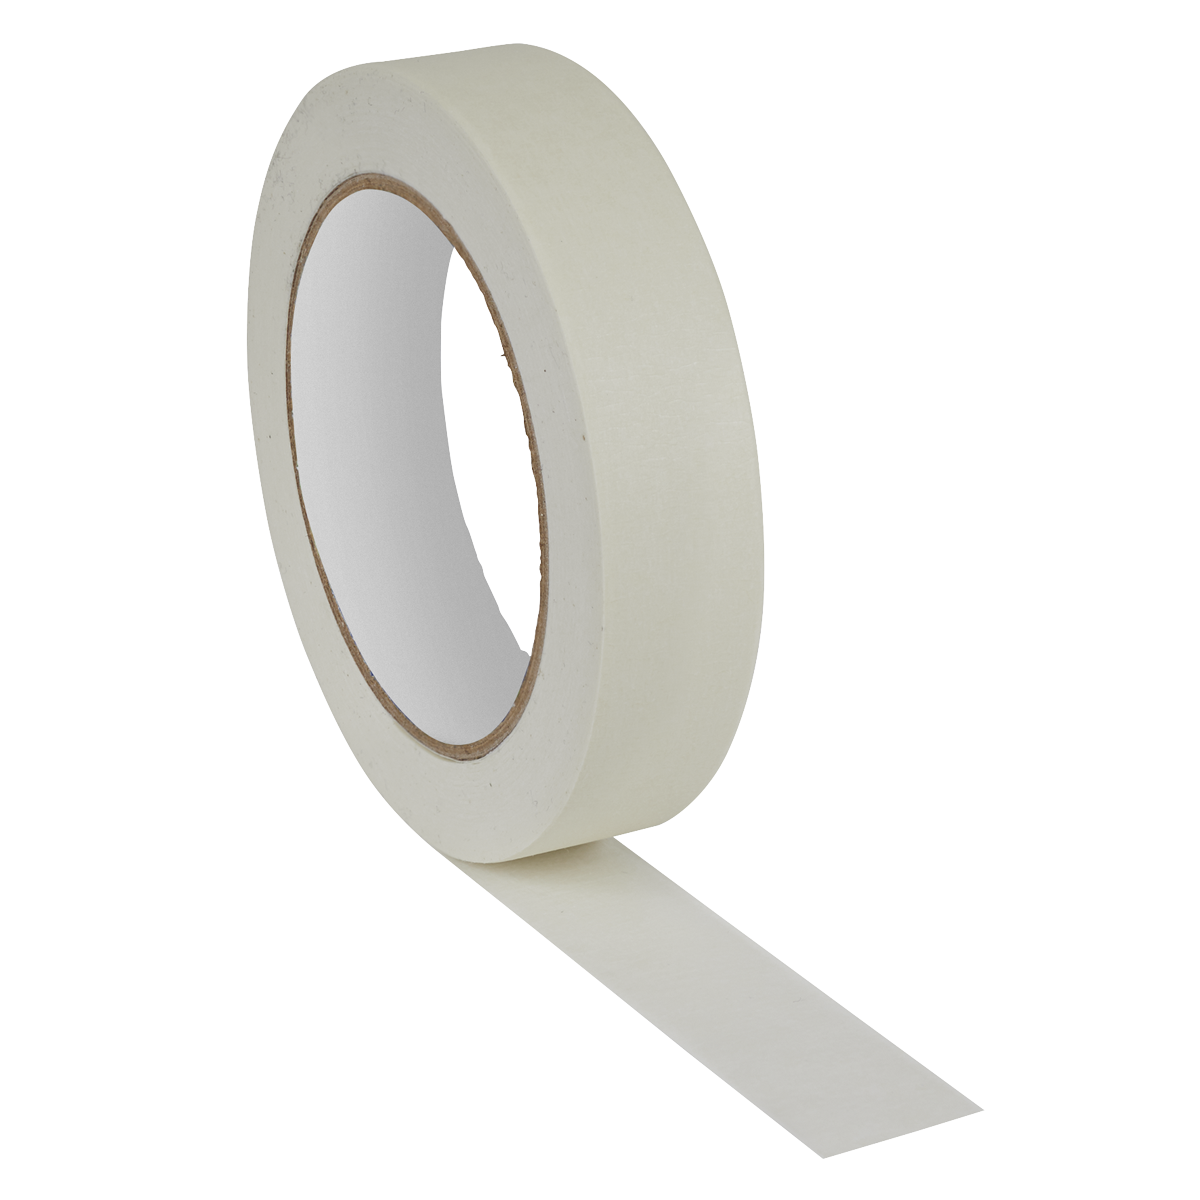 Sealey Masking Tape General-Purpose 24mm x 50m 60°C